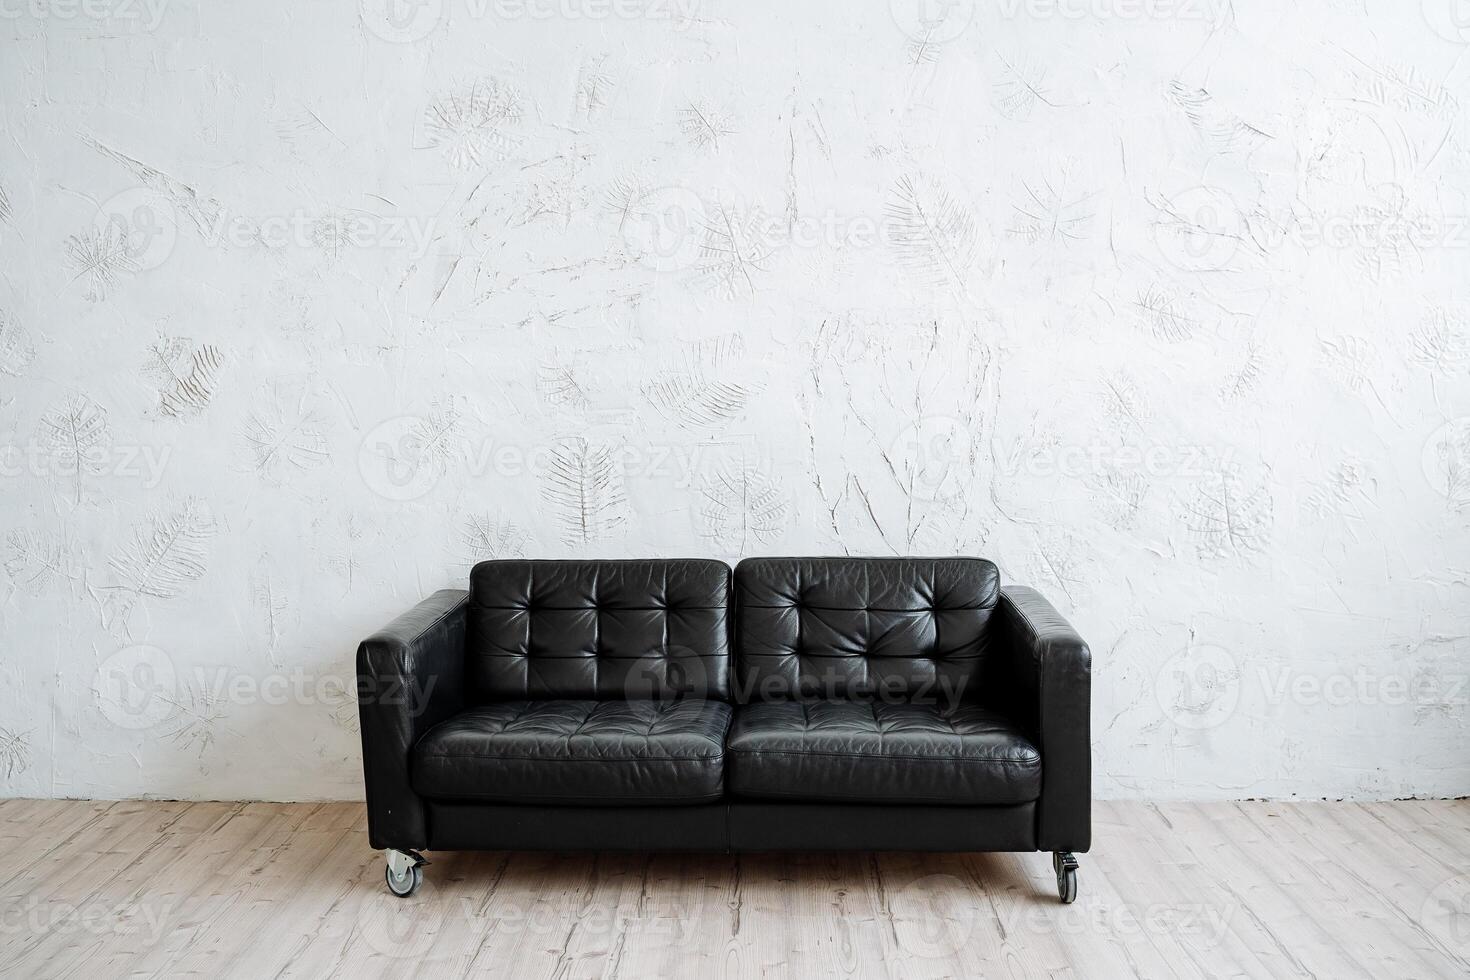 Perfecto negro cuero sofá en un minimalista estilo. moderno muebles, conveniencia y comodidad foto